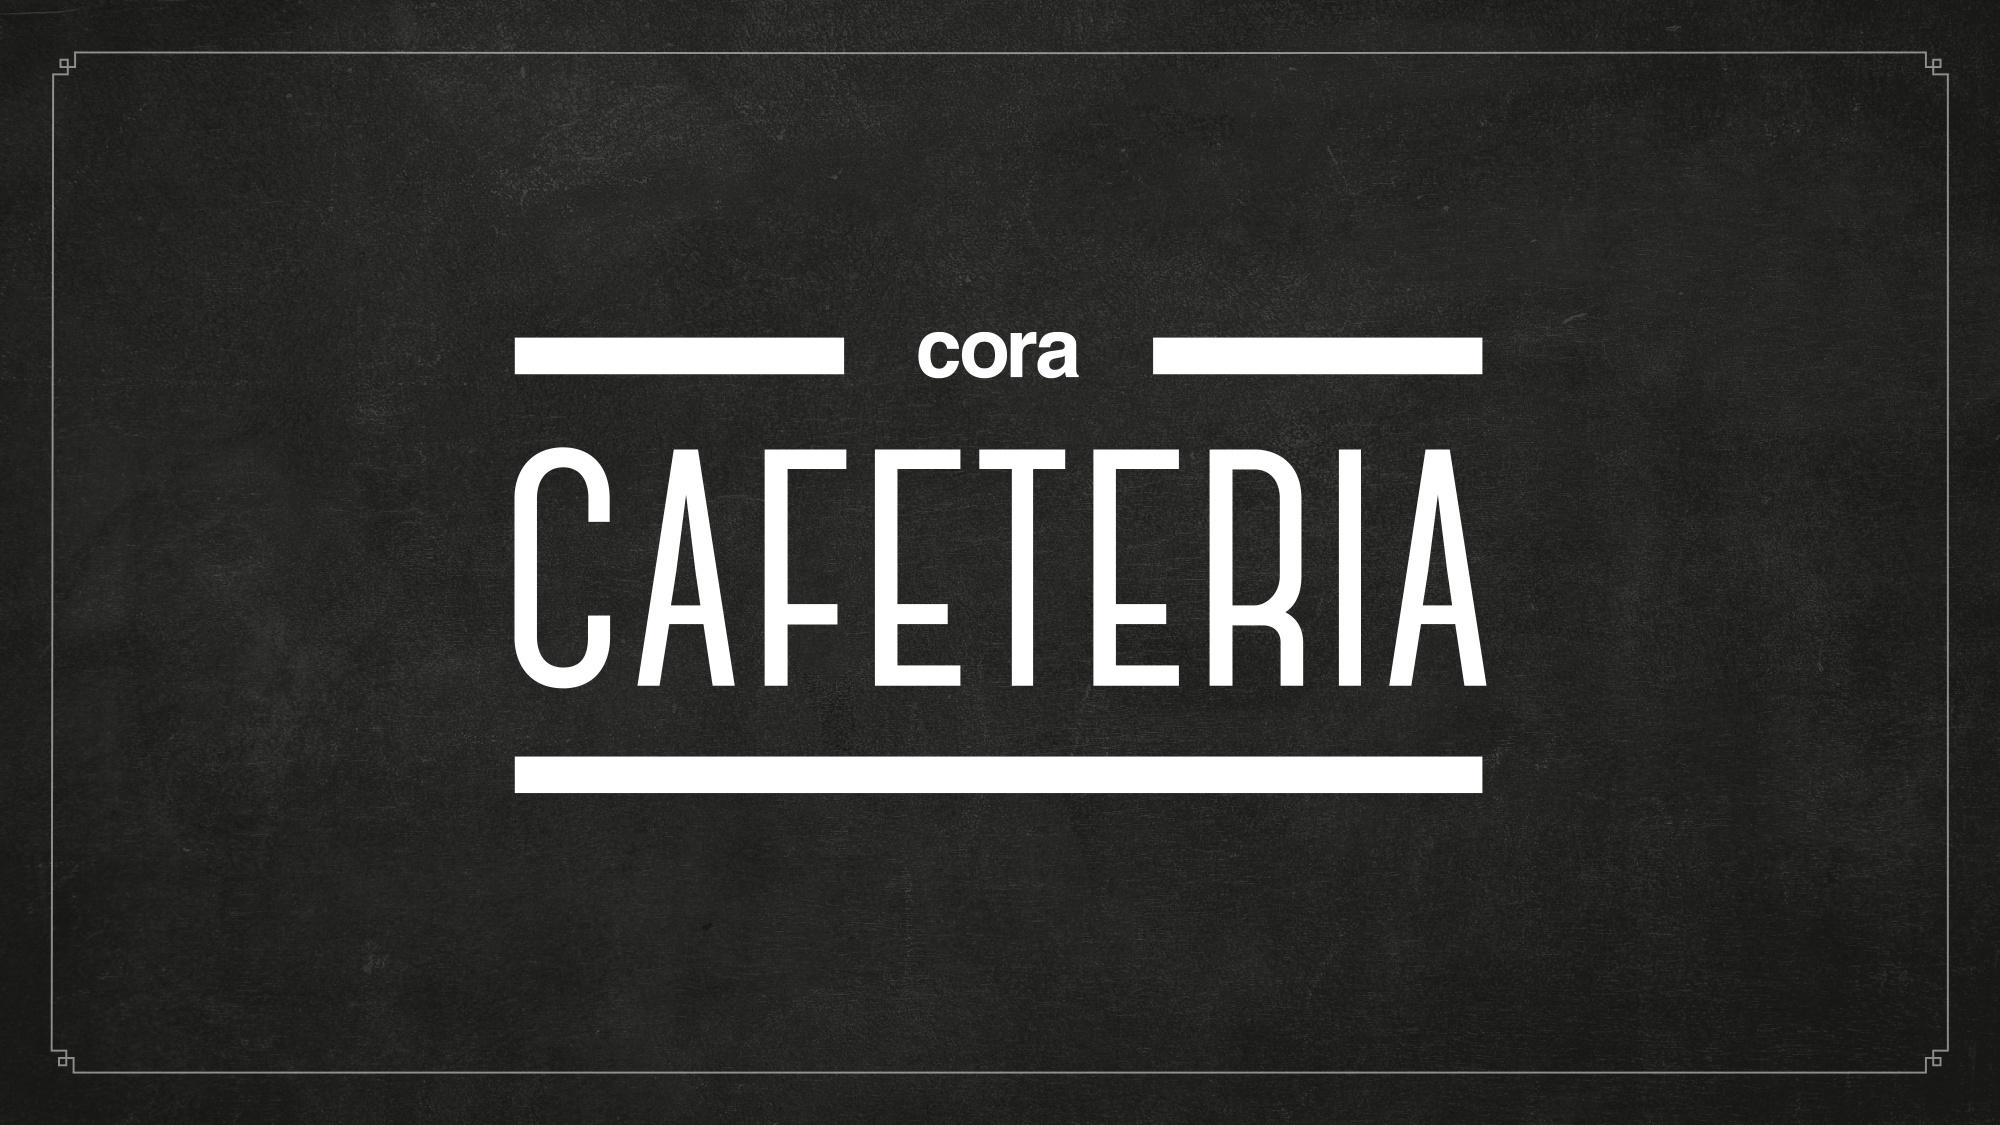 Cora Cafeteria Vendin Le Vieil